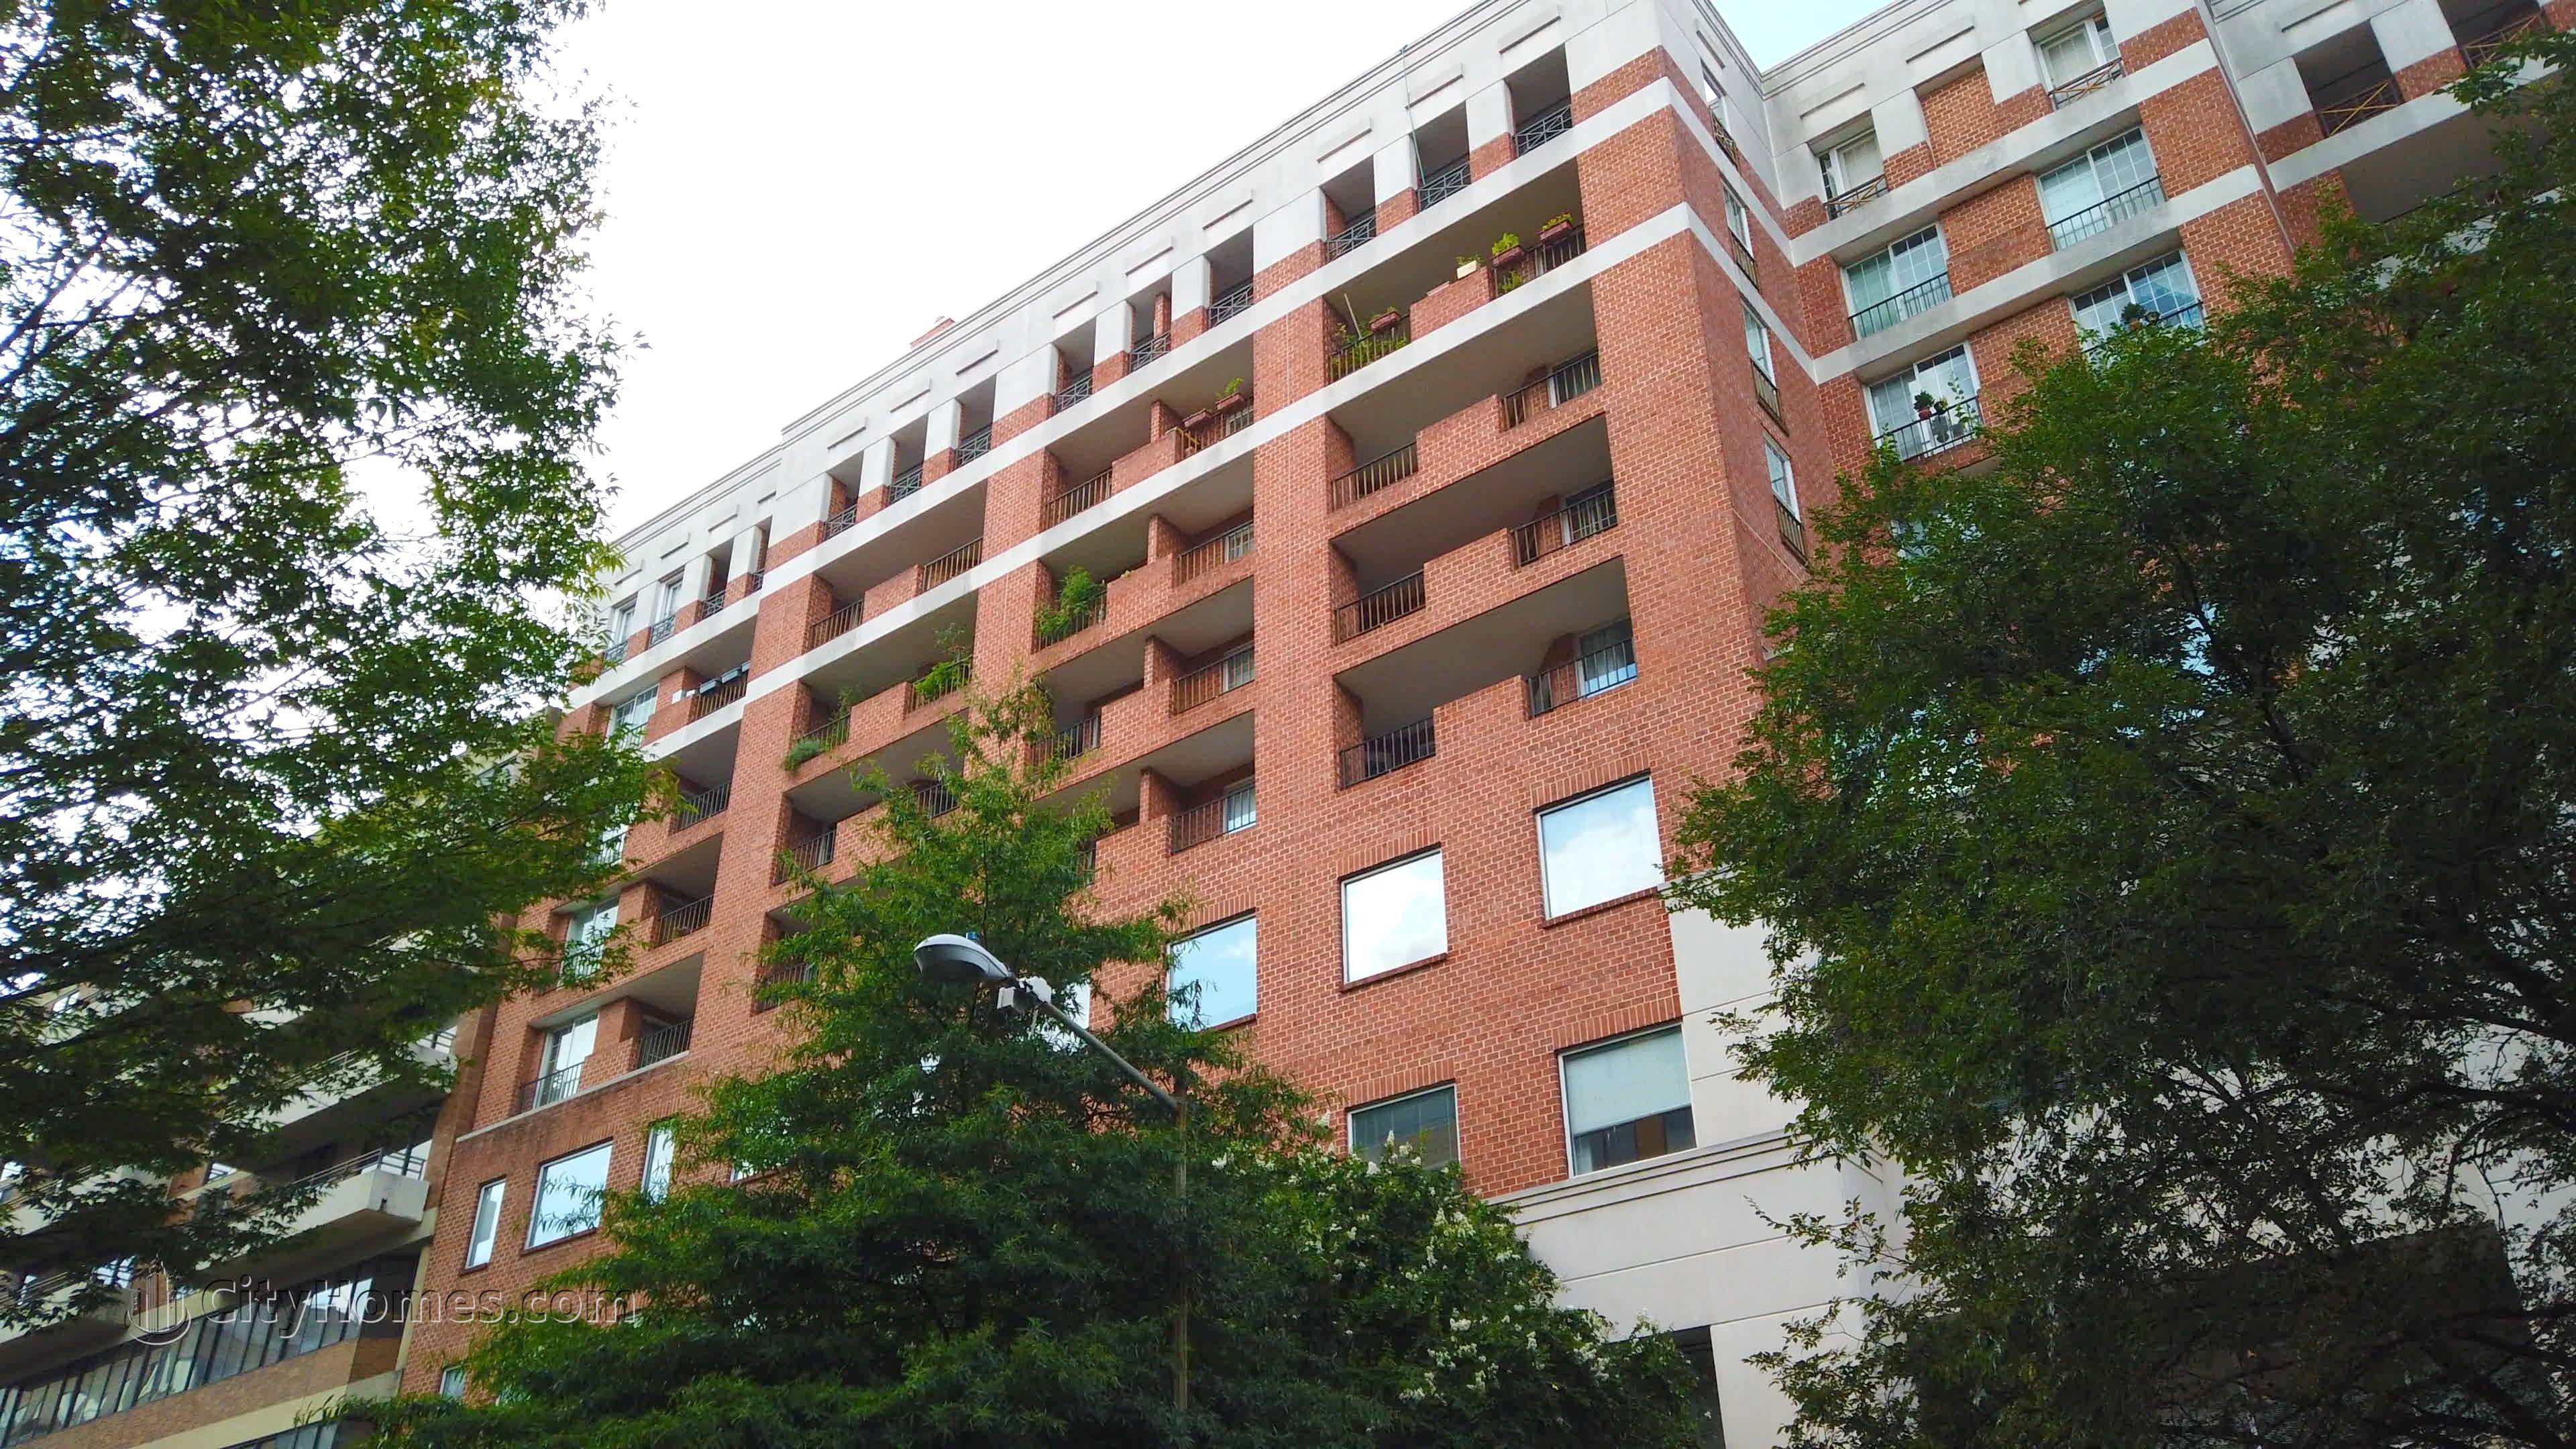 7. Metropolitan Condos edificio a 1230 23rd St NW, West End, Washington, DC 20037